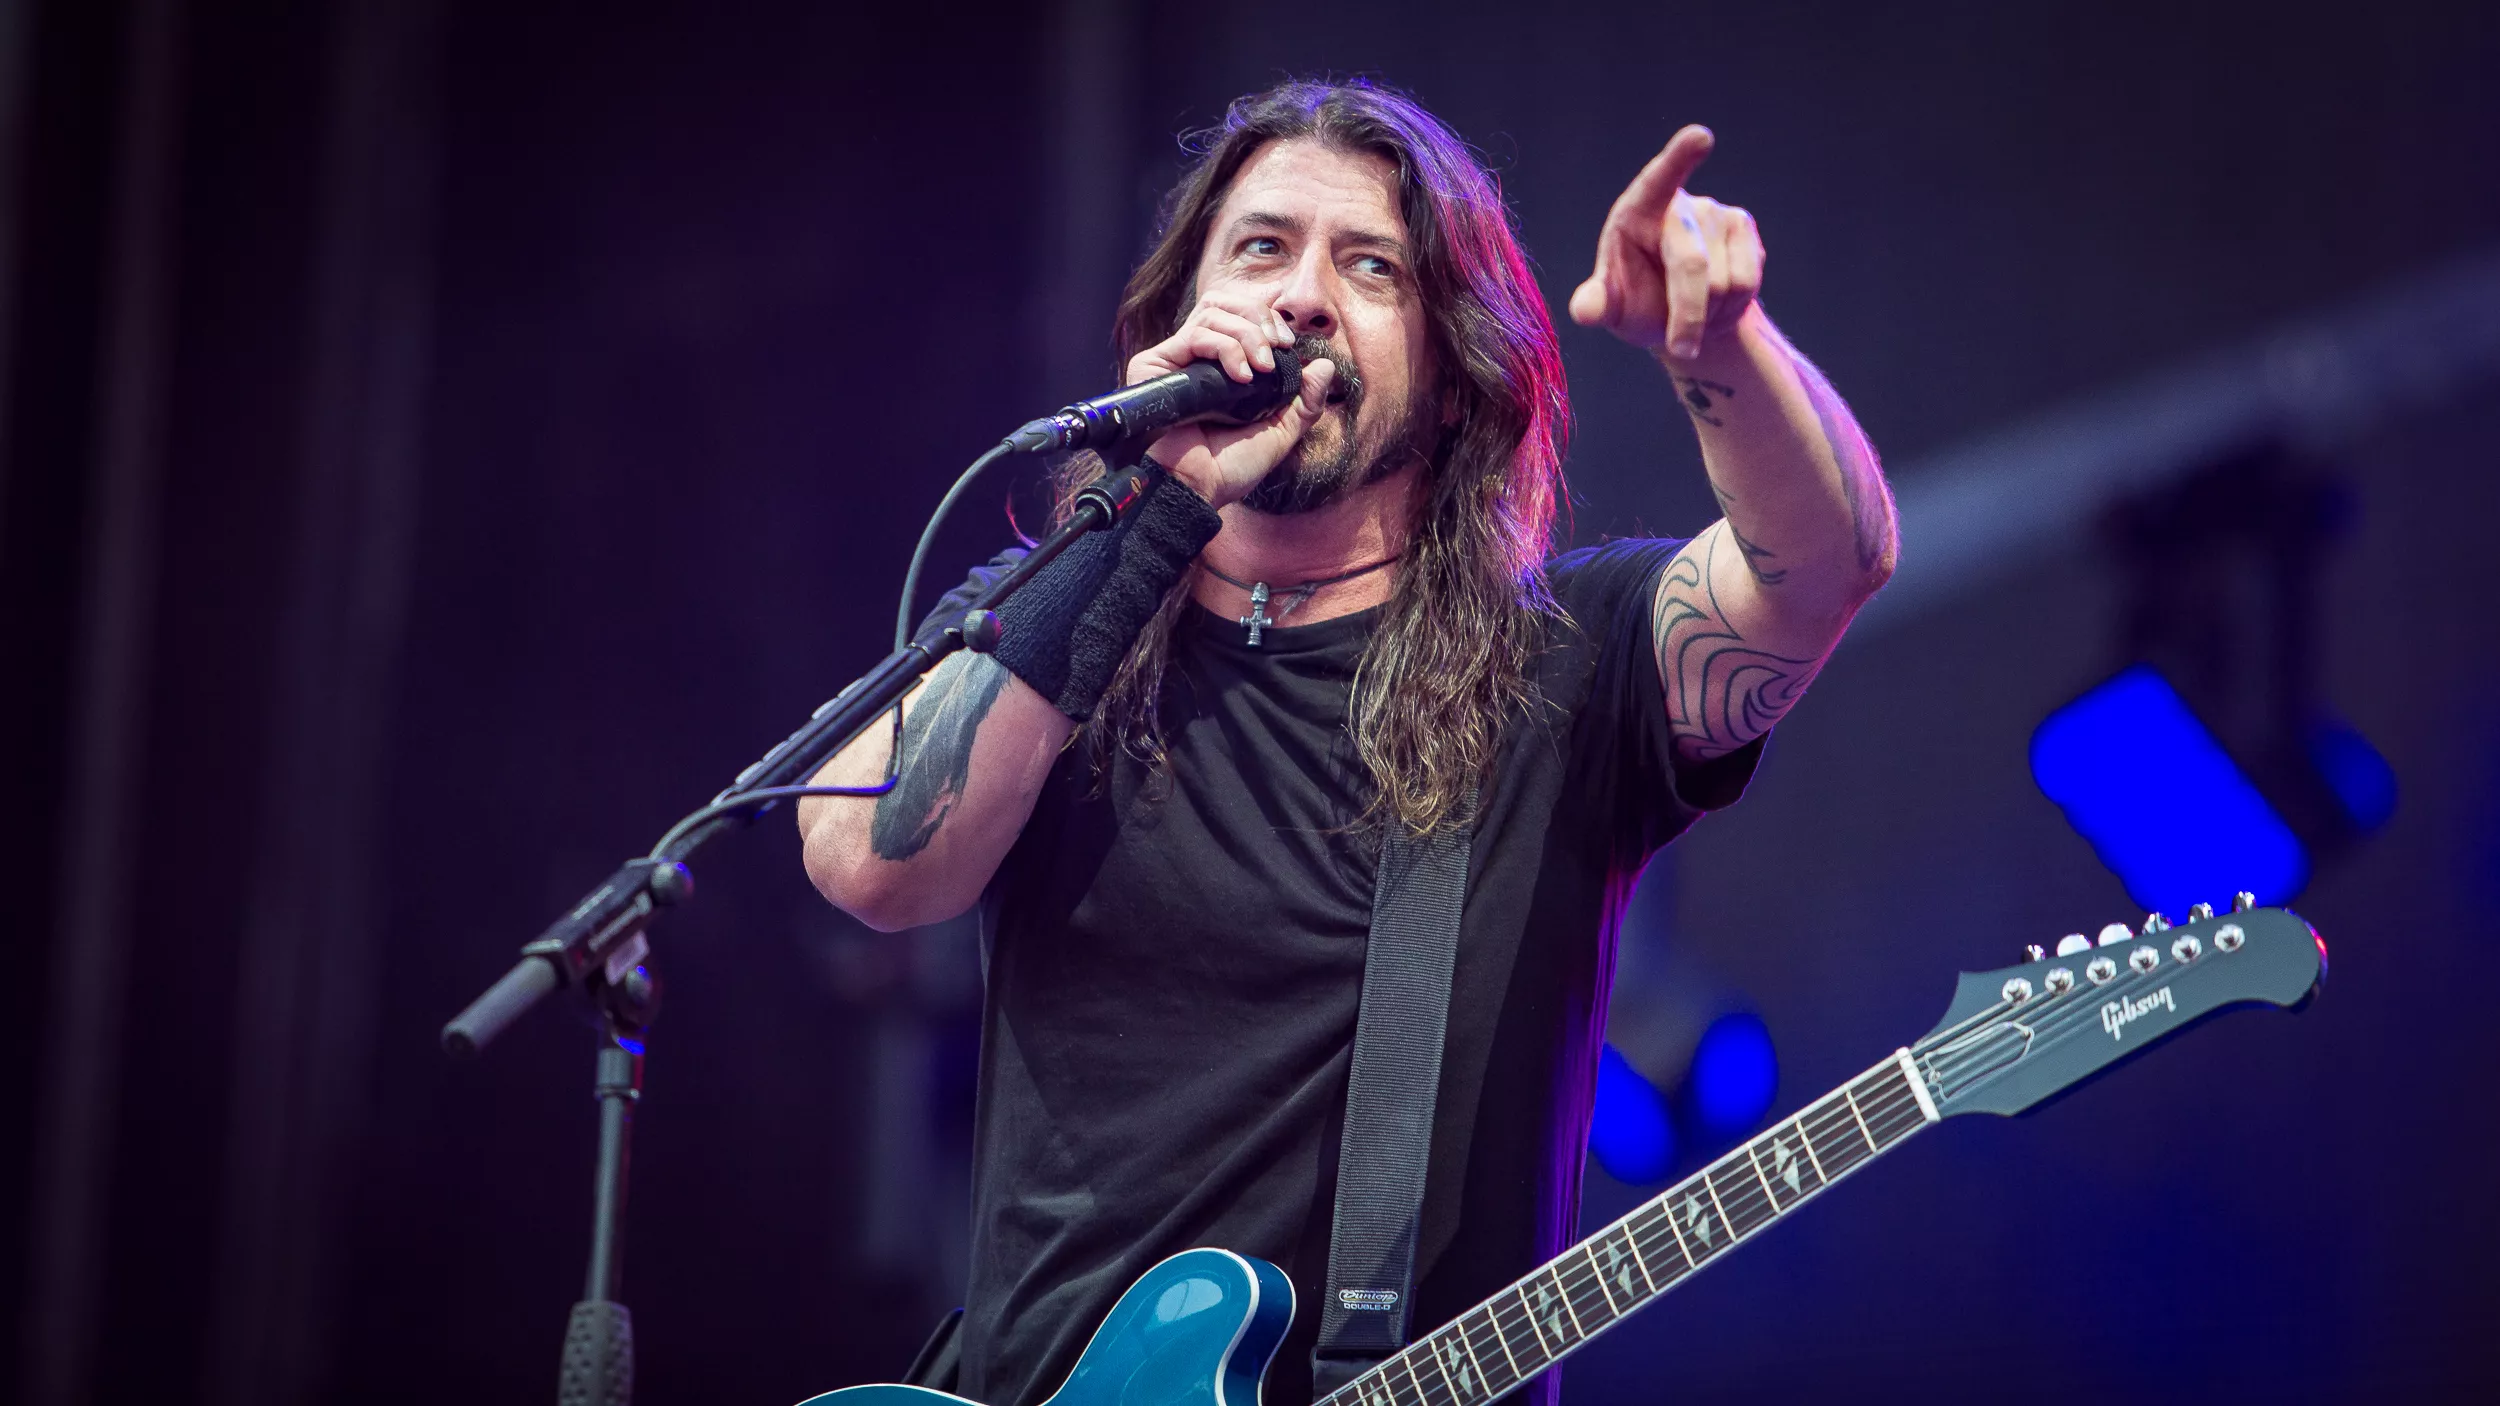 Dave Grohl i nyt interview: "Det var frygtindgydende at være frontmand i Foo Fighters"